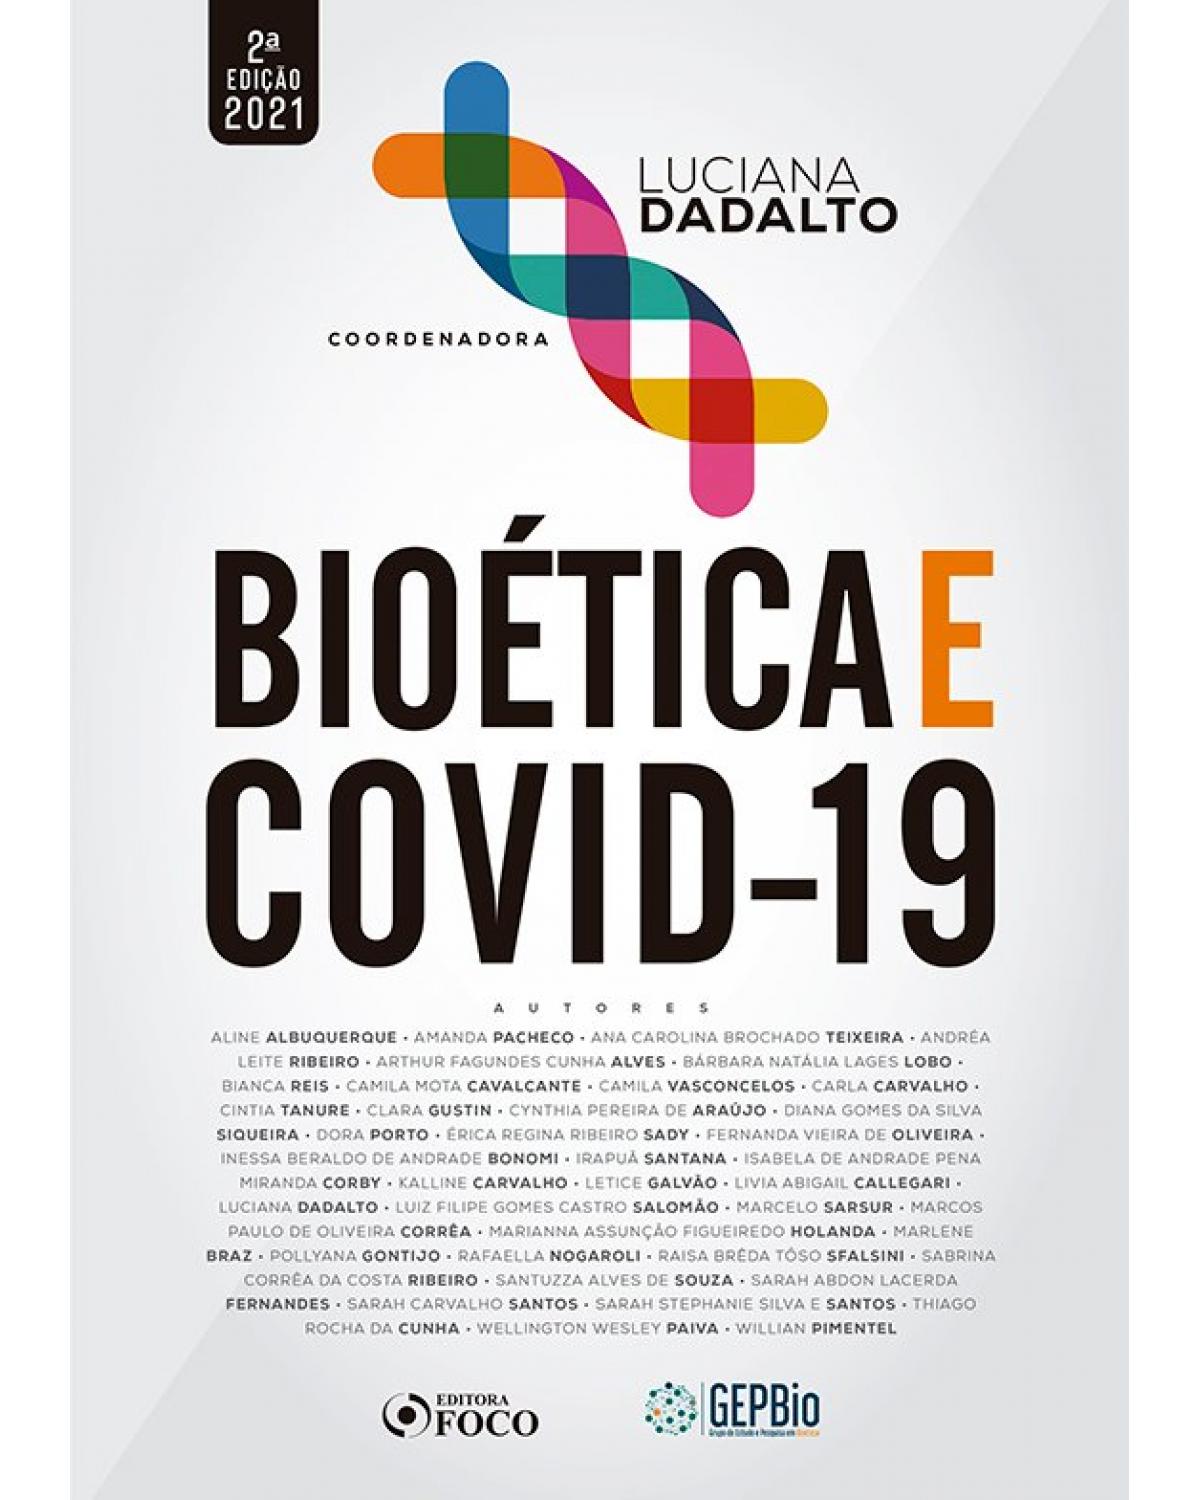 Bioética e Covid-19 - 2ª Edição | 2020